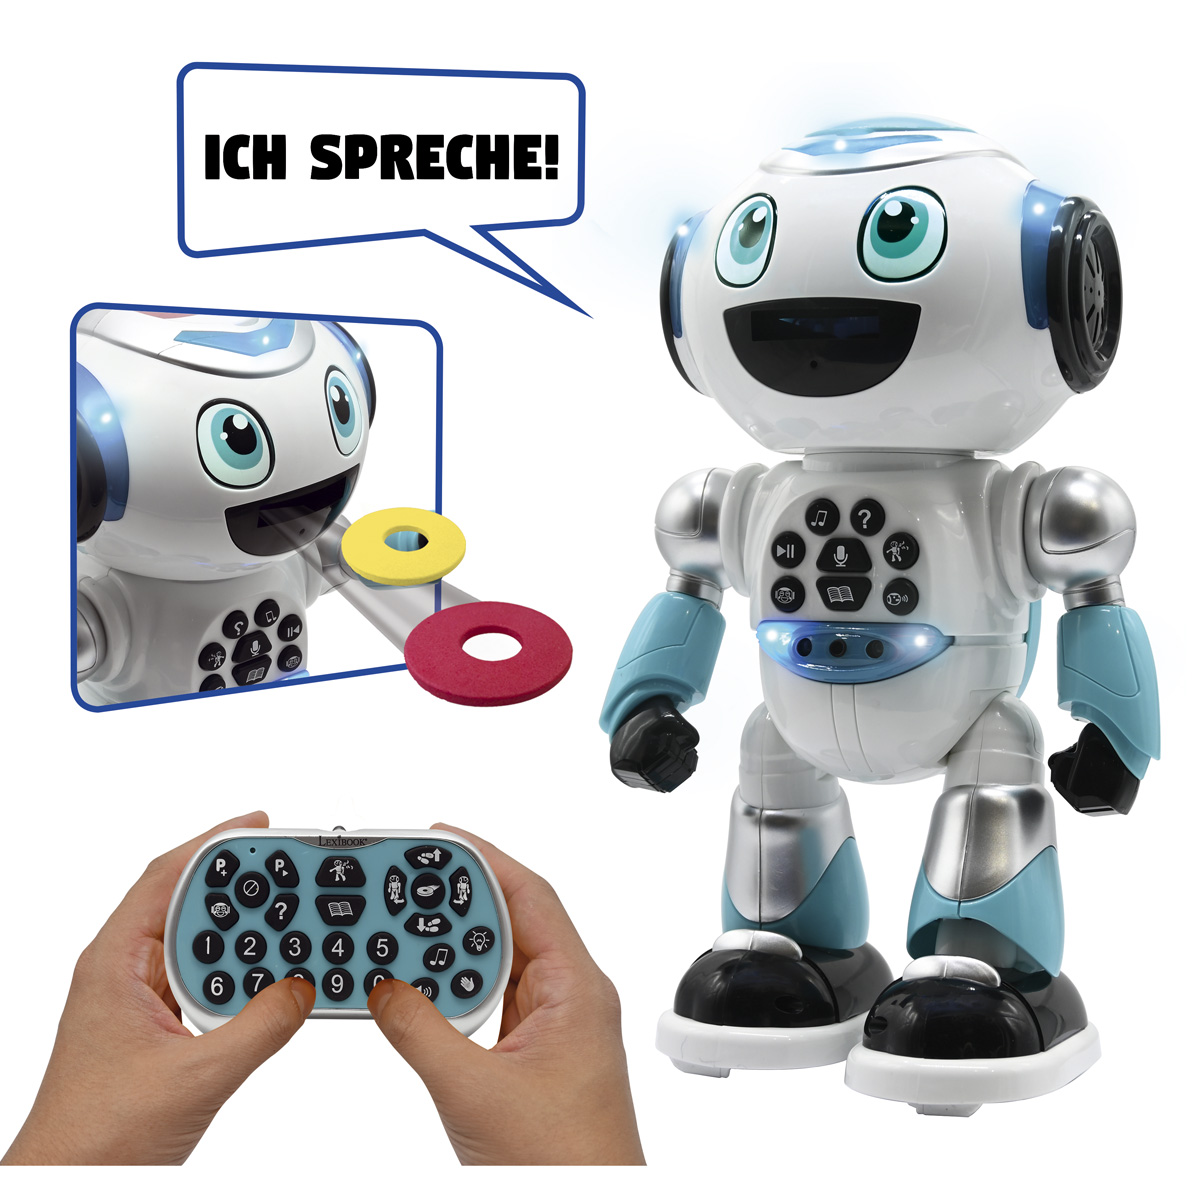 ADVANCED Geschichtsgenerator POWERMAN® Lernroboter, Blau/Weiß mit sprechend) (Deutsch LEXIBOOK